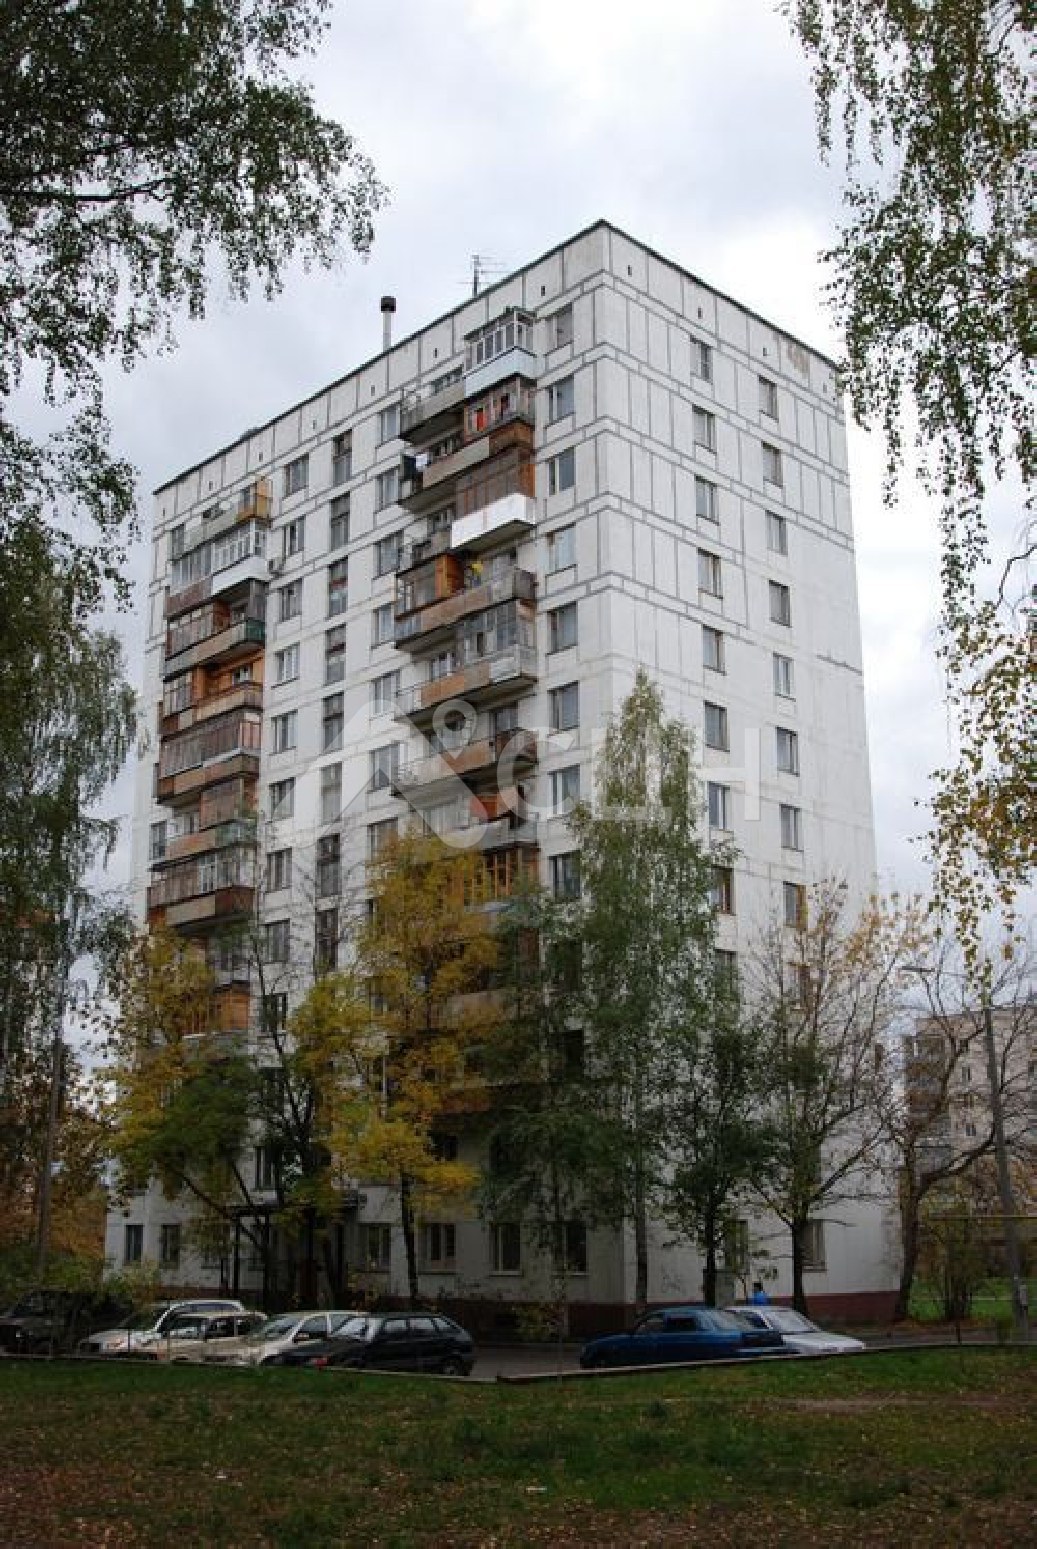 снять квартиру в сарове
: Г. Саров, улица Бессарабенко, 7, 1-комн квартира, этаж 12 из 12, аренда.